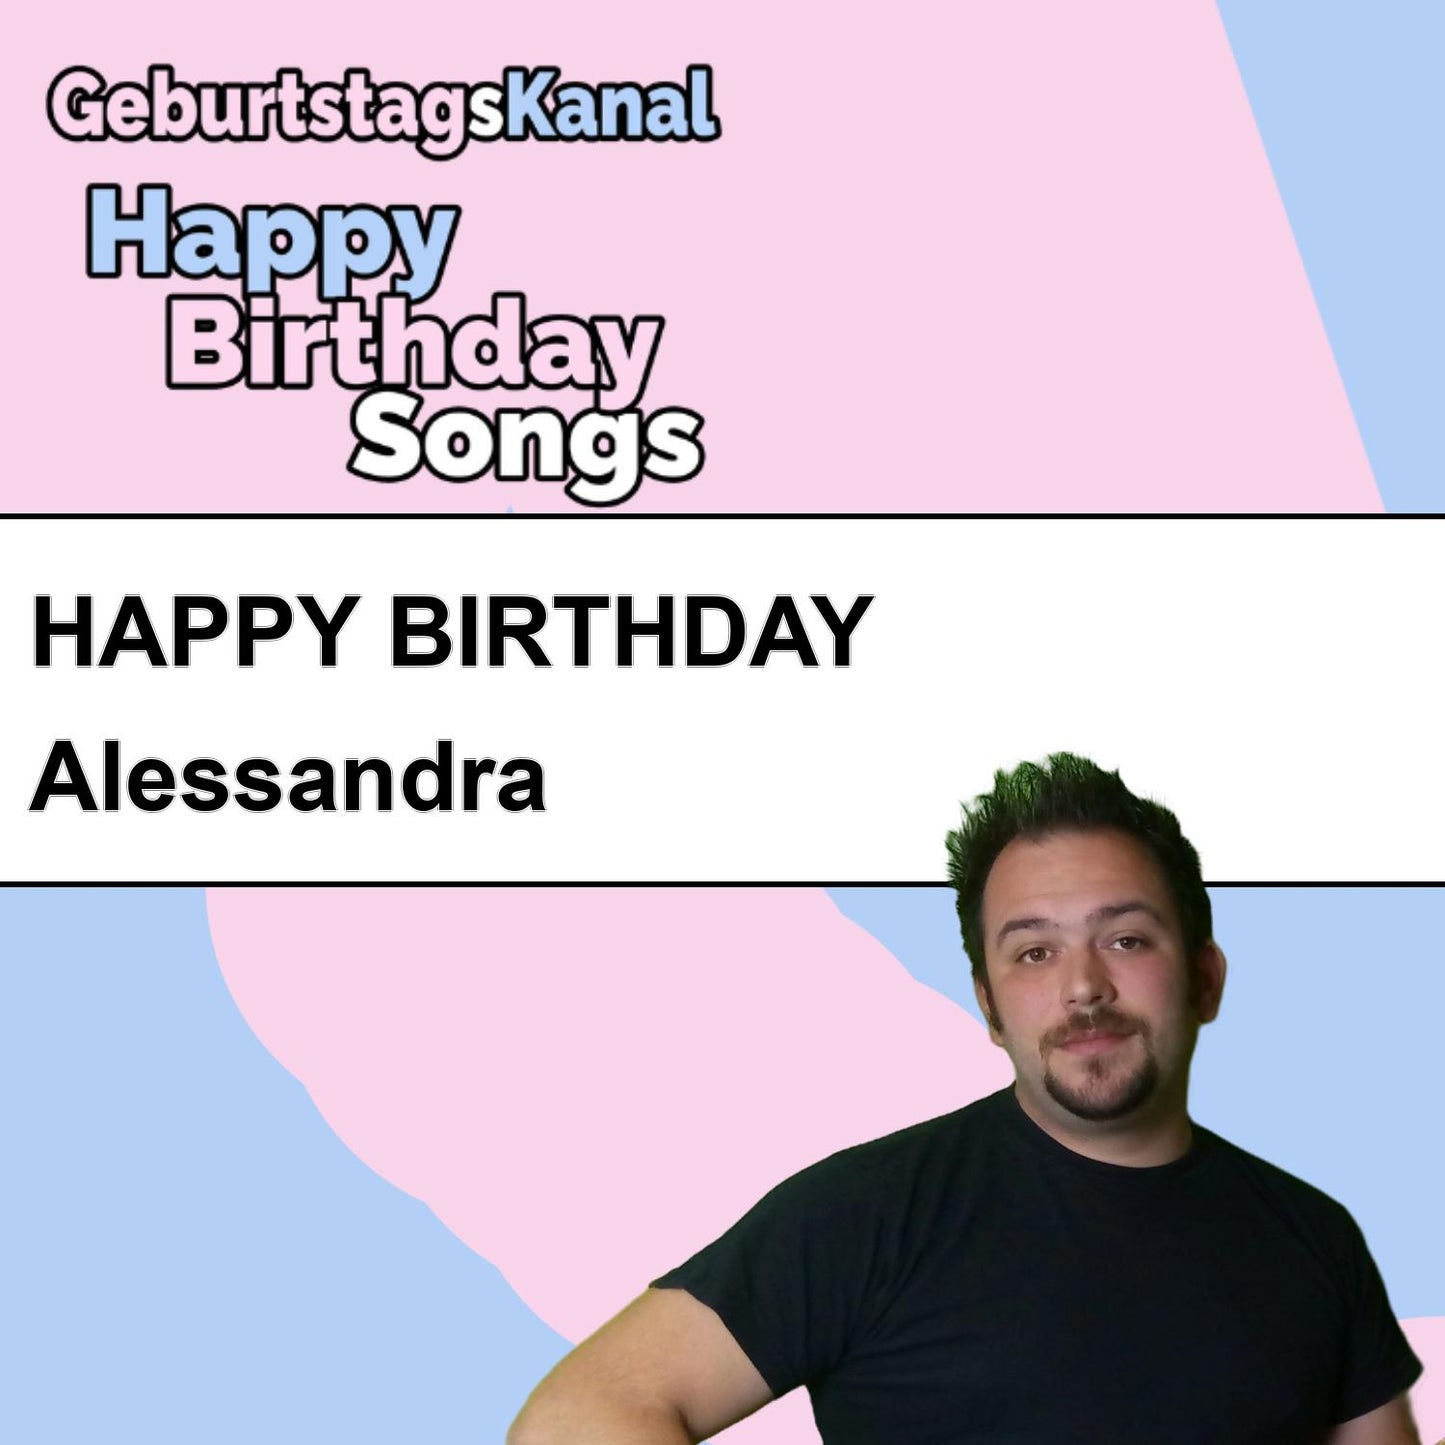 Produktbild Happy Birthday to you Alessandra mit Wunschgrußbotschaft